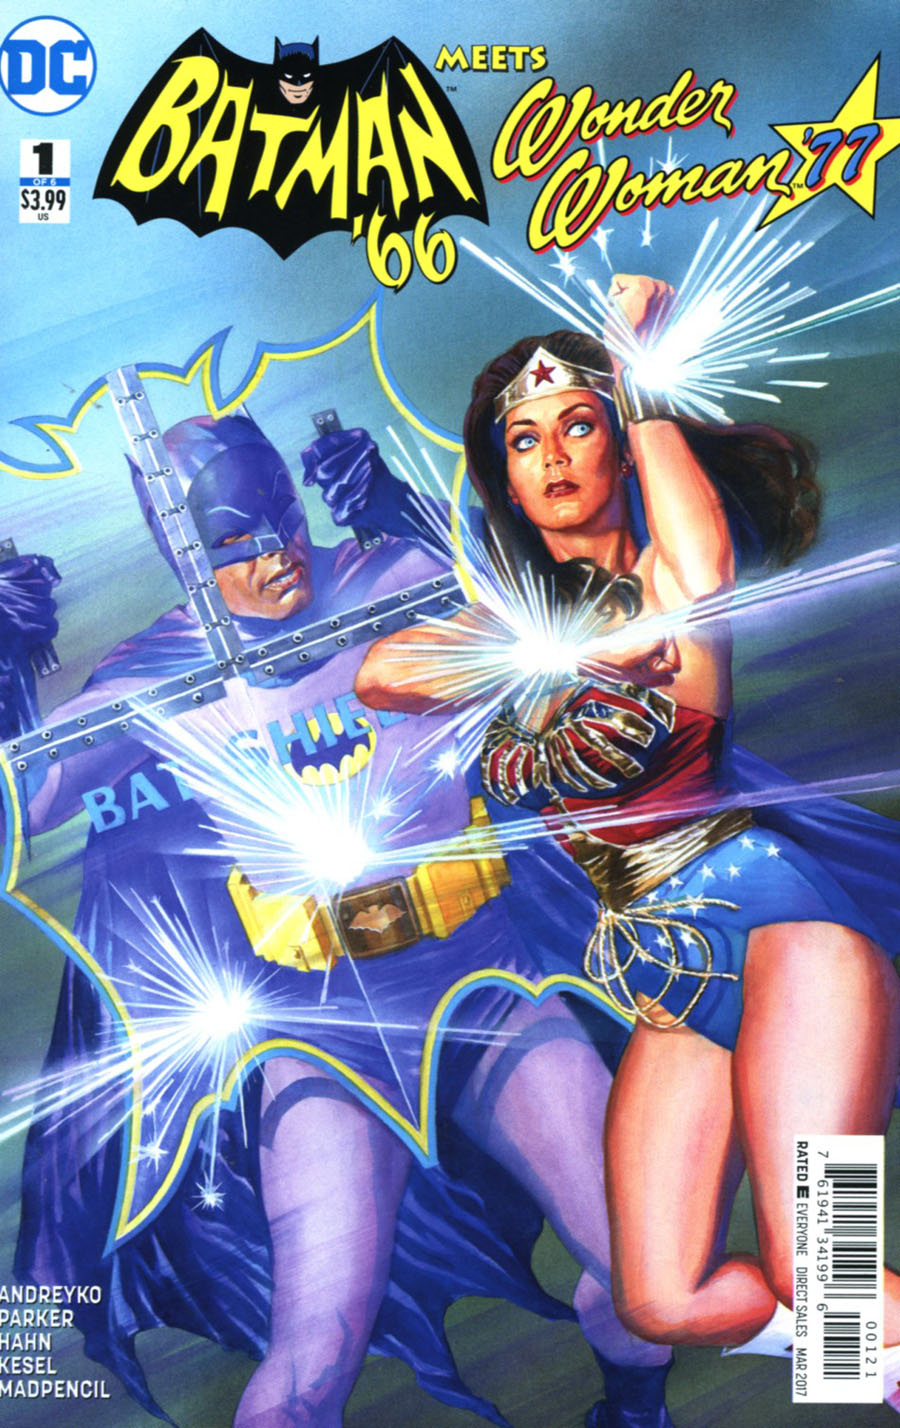 Batman 66 Meets Wonder Woman 77 #1 Cover B Variant Alex Ross Cover